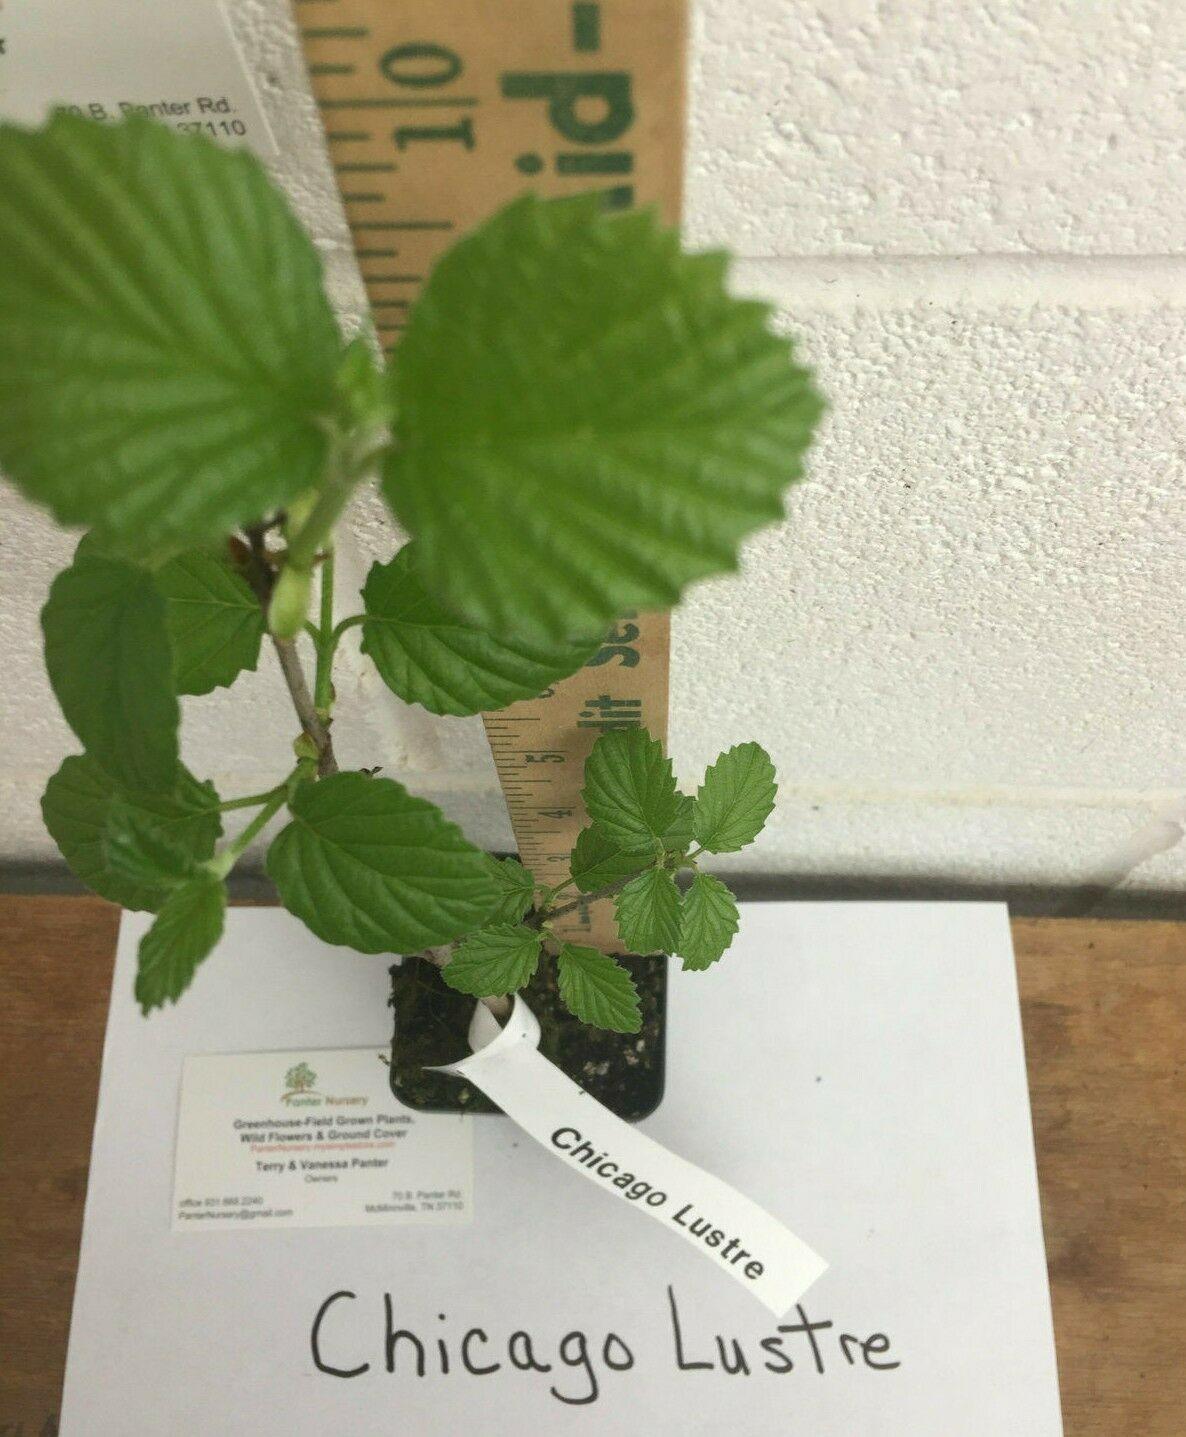 2 Chicago Lustre Viburnum Shrubs - 10-18" Tall Seedlings - 2.5" Pots - Live Plants - The Nursery Center